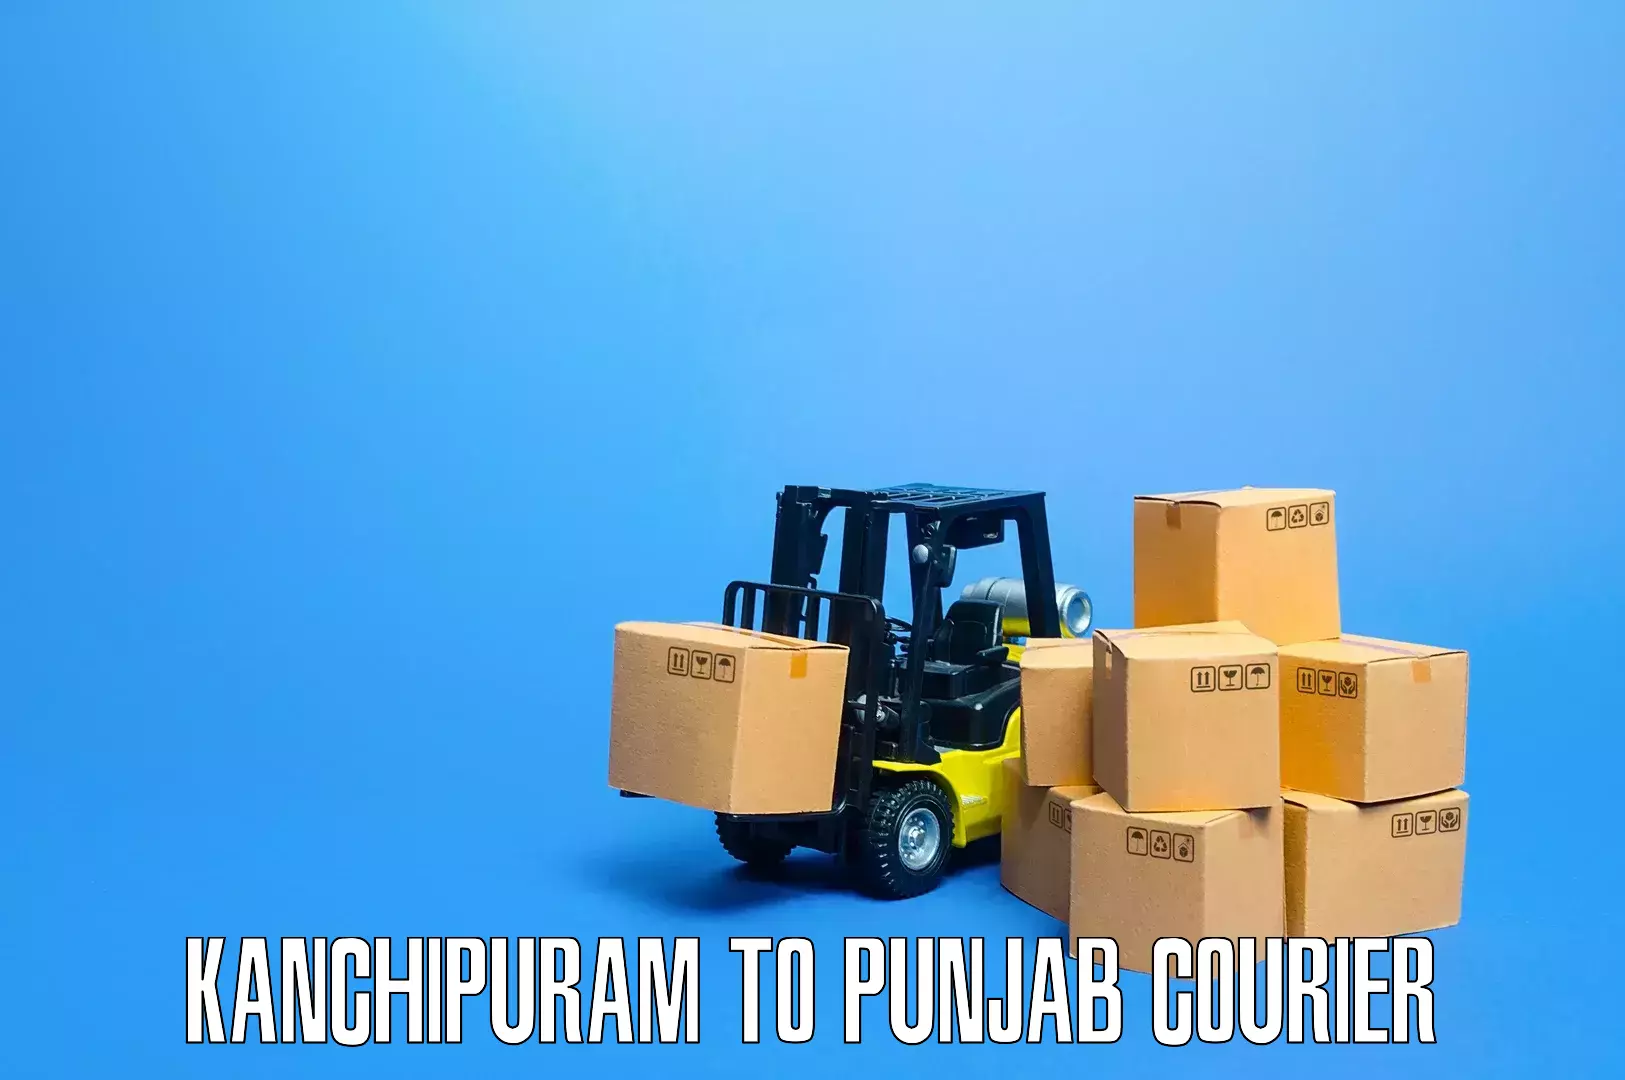 Professional furniture moving in Kanchipuram to Gurdaspur